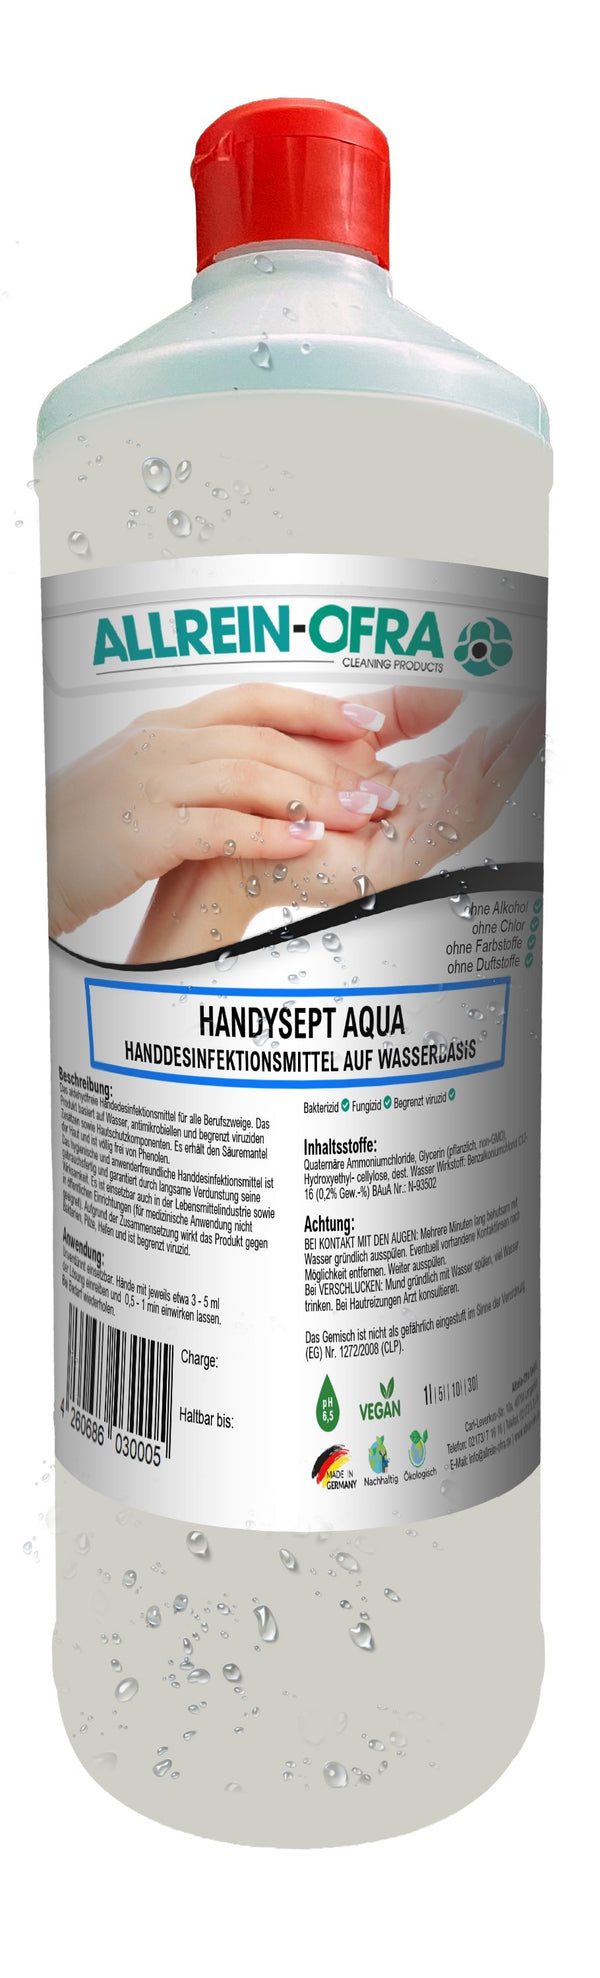 Handysept Aqua, Handdesinfektionsmittel auf Wasserbasis, 1 Liter-Flasche - fivestartoolshop.com